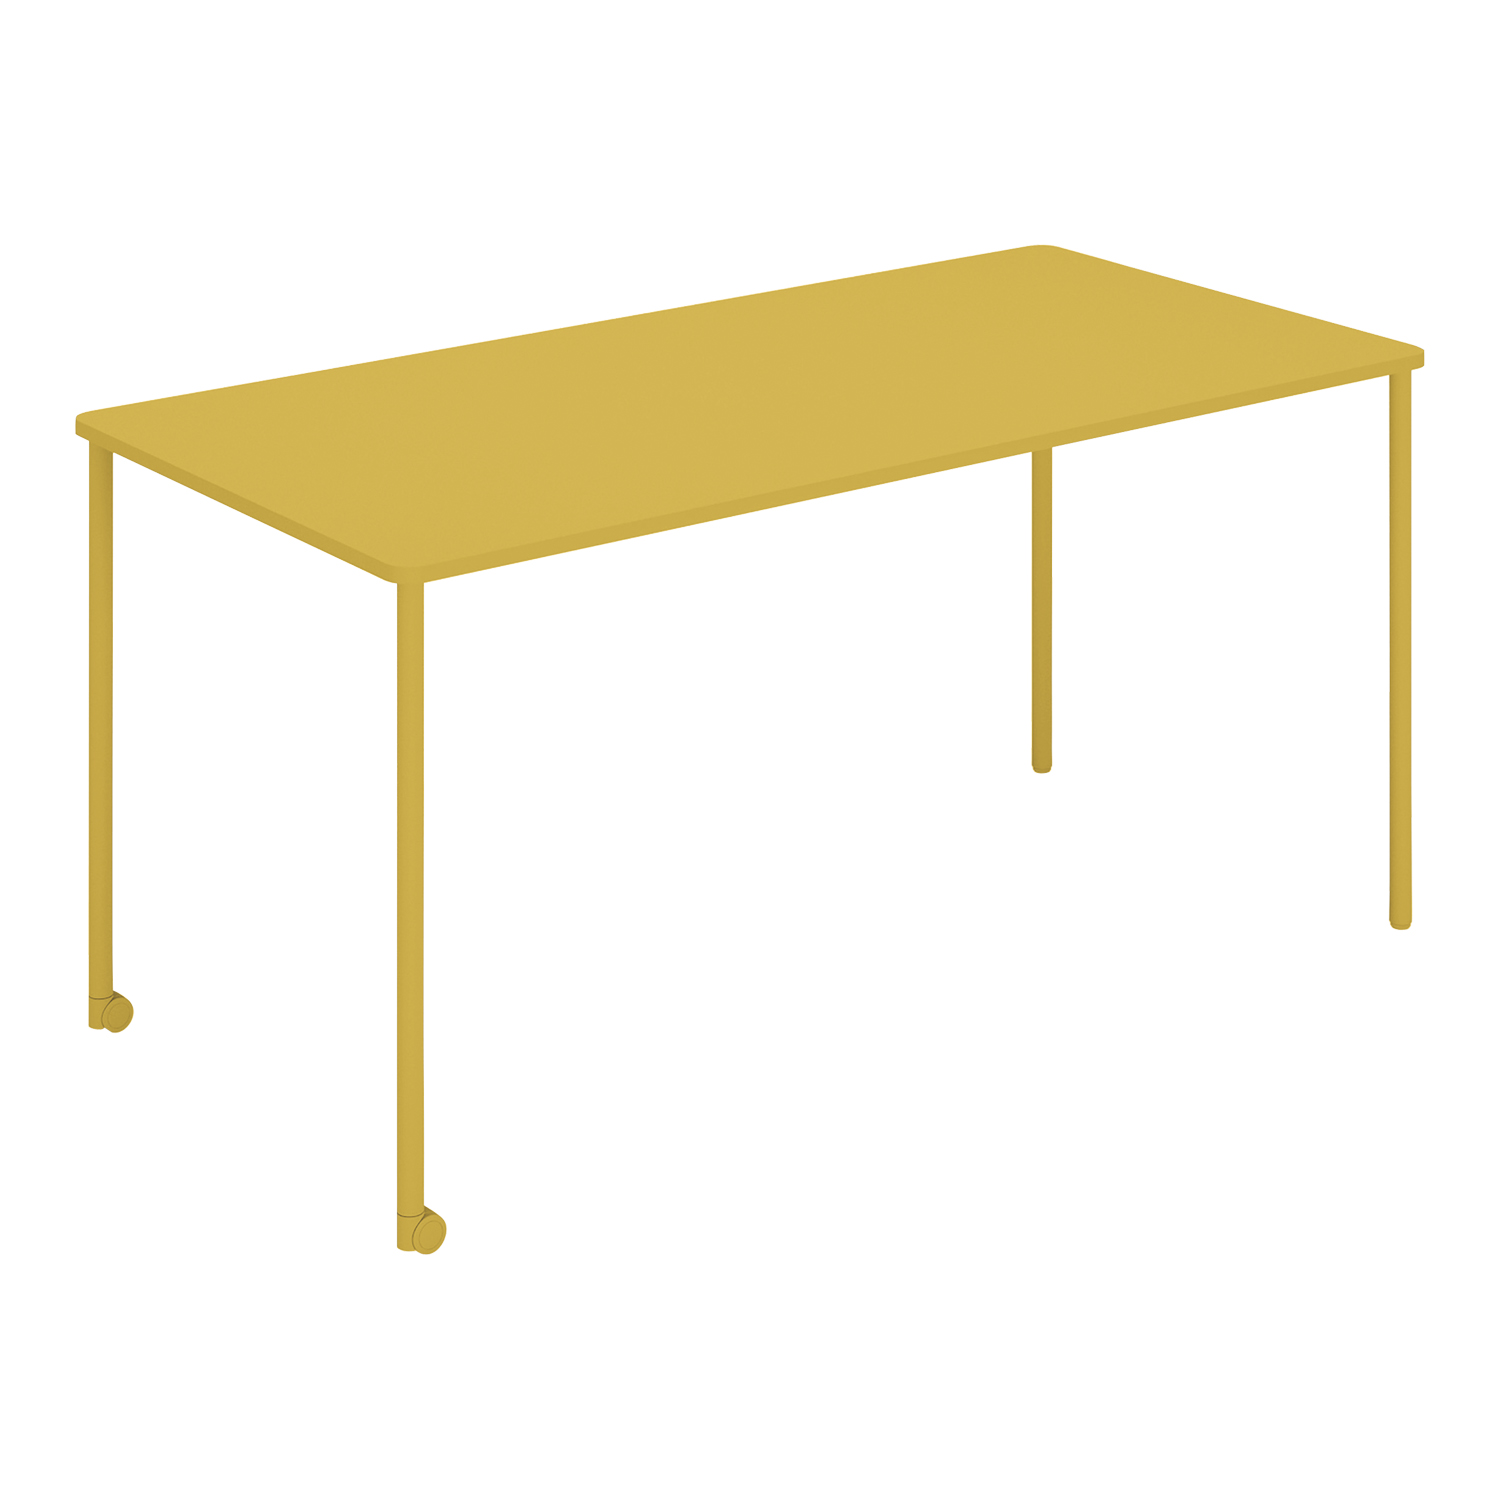 【ラクラク納品】コクヨ ミーティングテーブル Any Table エニー テーブル TAN-MK1507M1 角形 W150×D75×H72cm